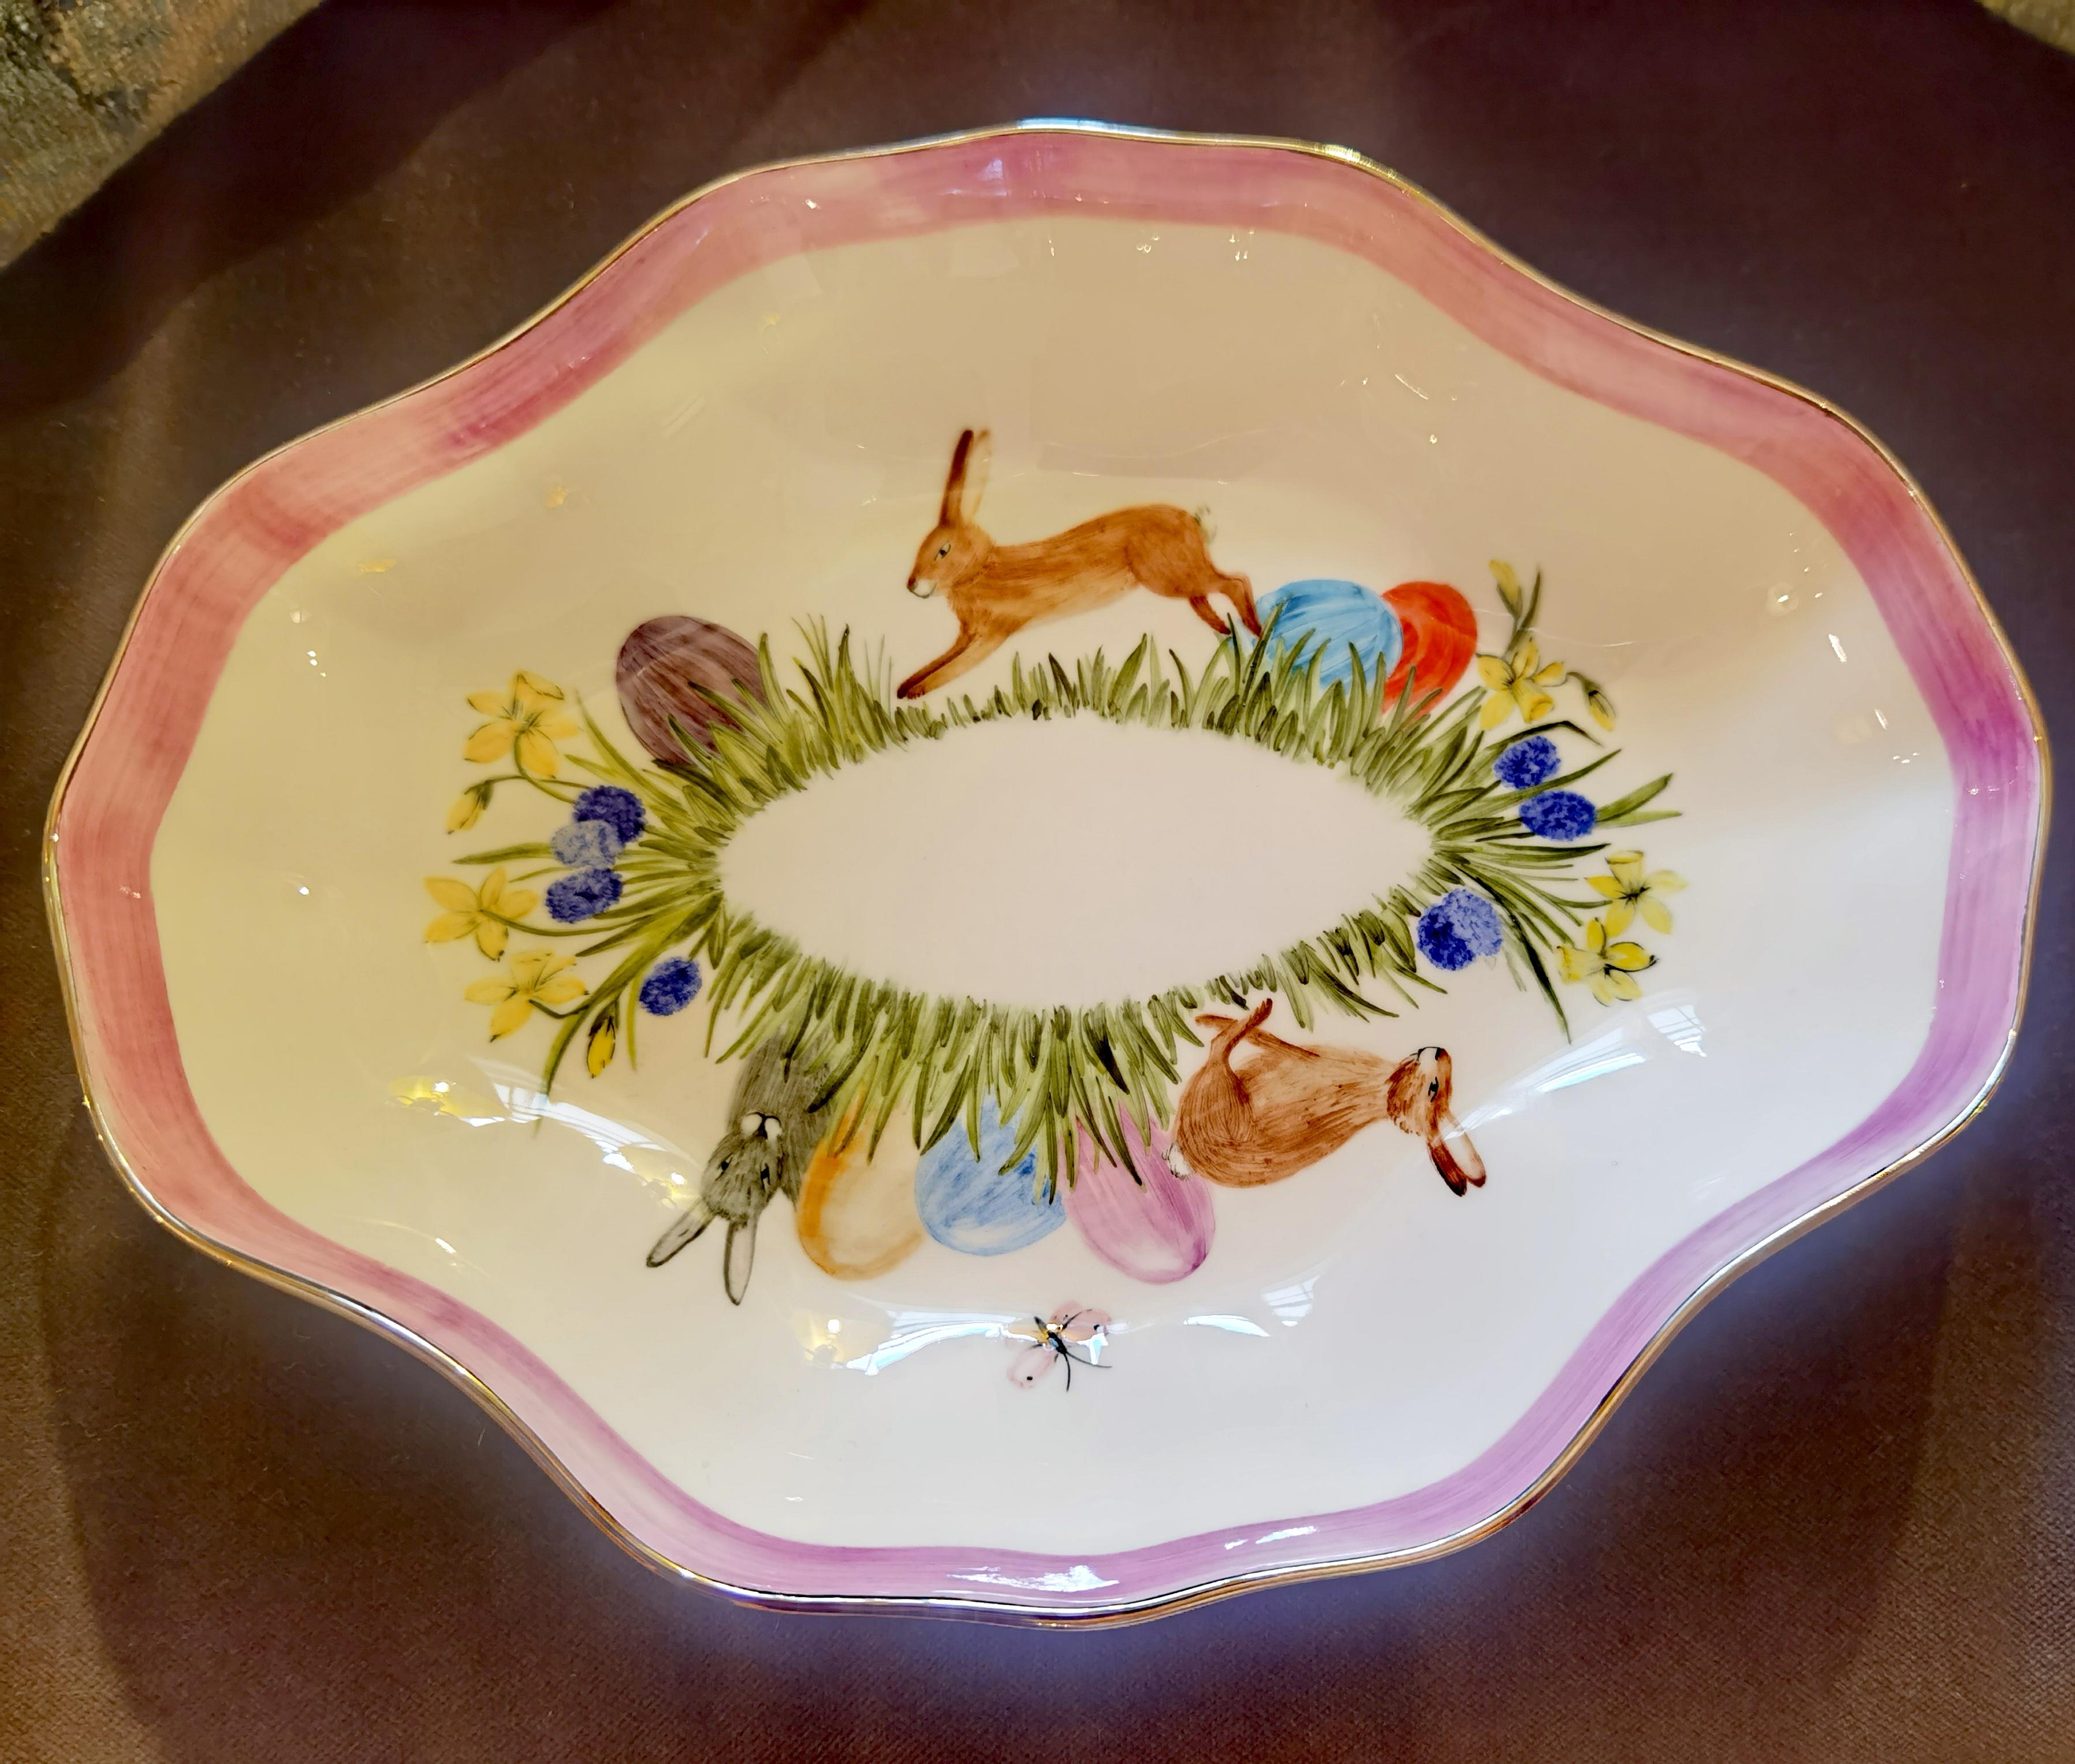 Ce plat à pâtisserie en porcelaine entièrement fait à la main est peint à la main avec un charmant décor de Pâques avec des lapins et des œufs colorés. Bordé à la main d'une ligne en platine. Fabriqué à la main en Bavière / Allemagne.
À propos de